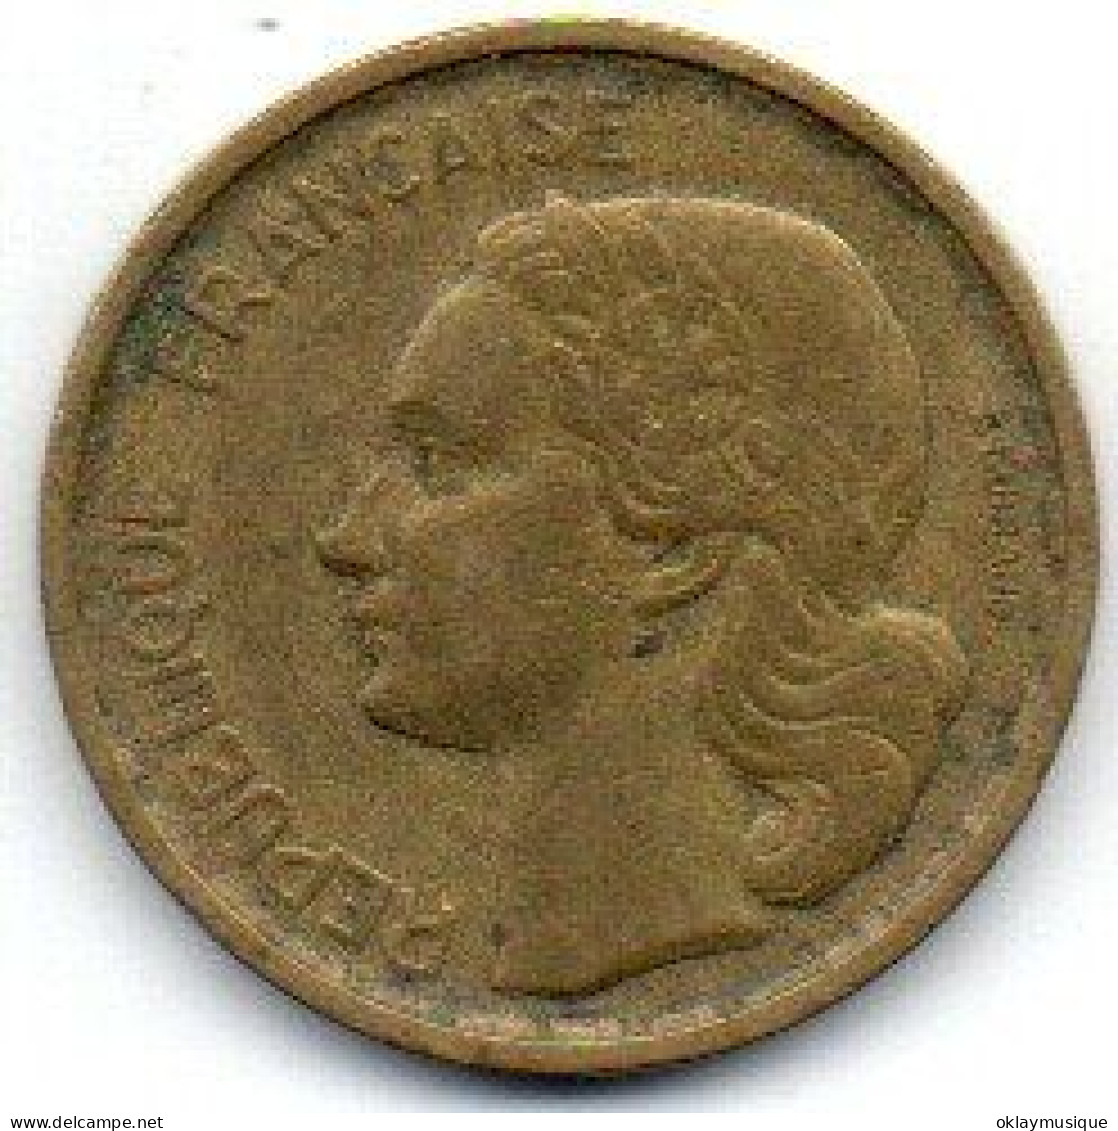 10 Francs 1951B - 10 Francs